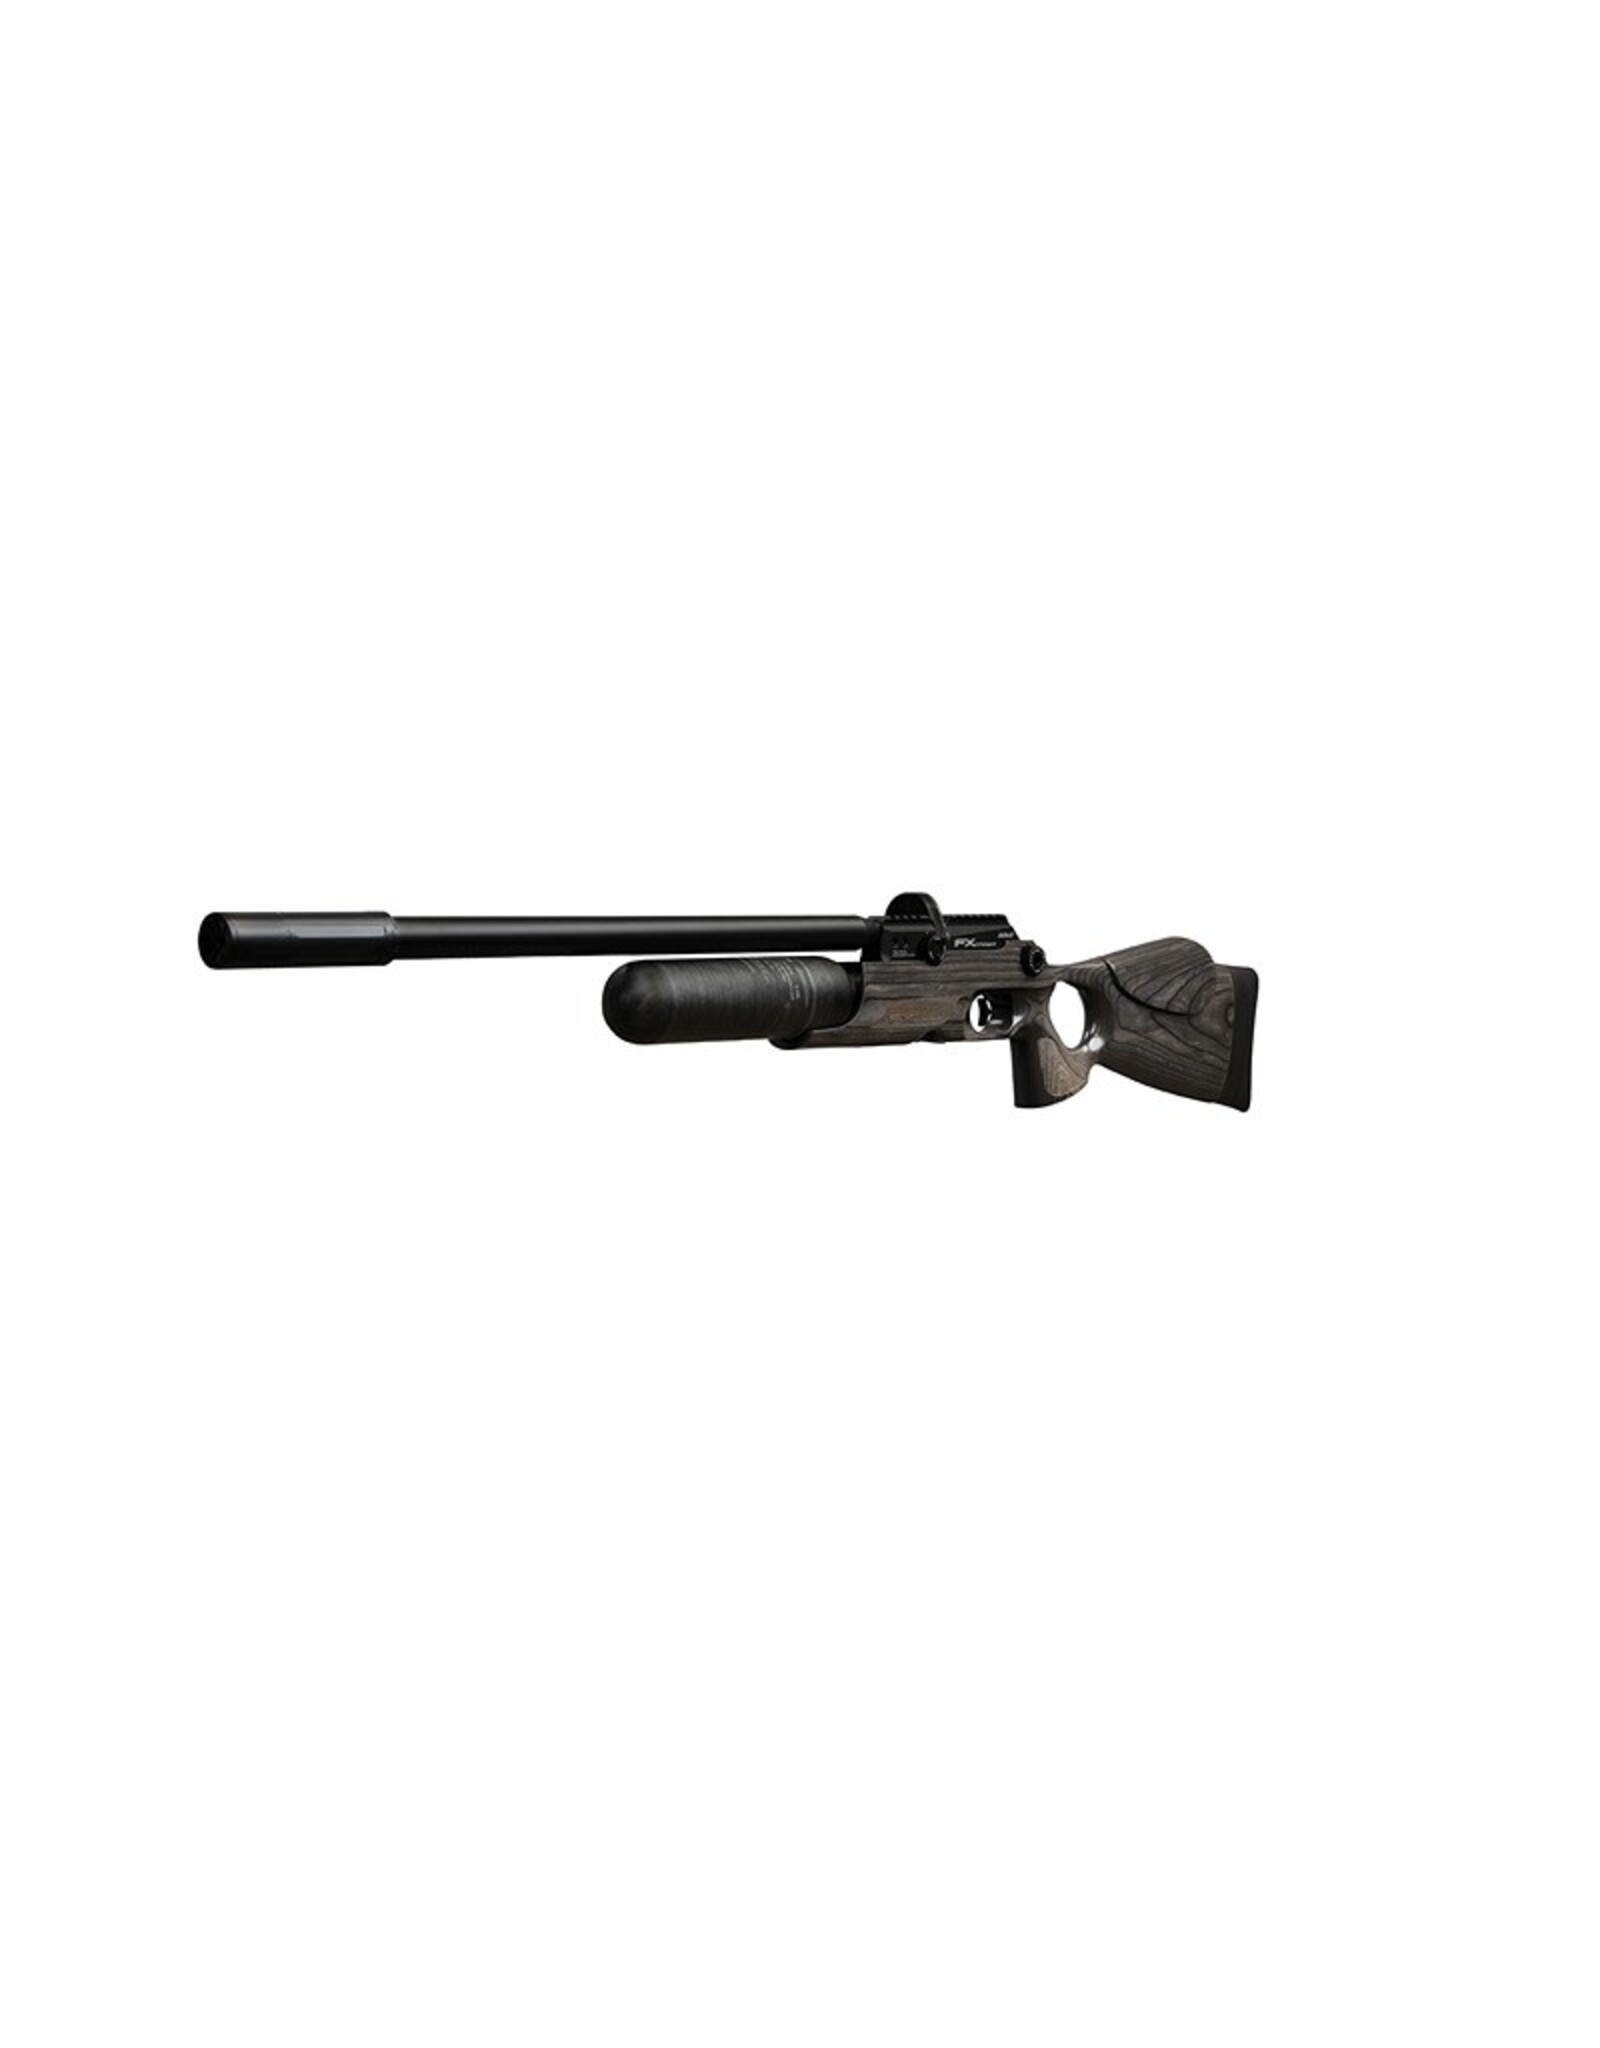 FX Airguns FX Crown MKII Standard Plus, Black Pepper Laminate  - 0.25 caliber - w/ DONNYFL - 600MM BARREL